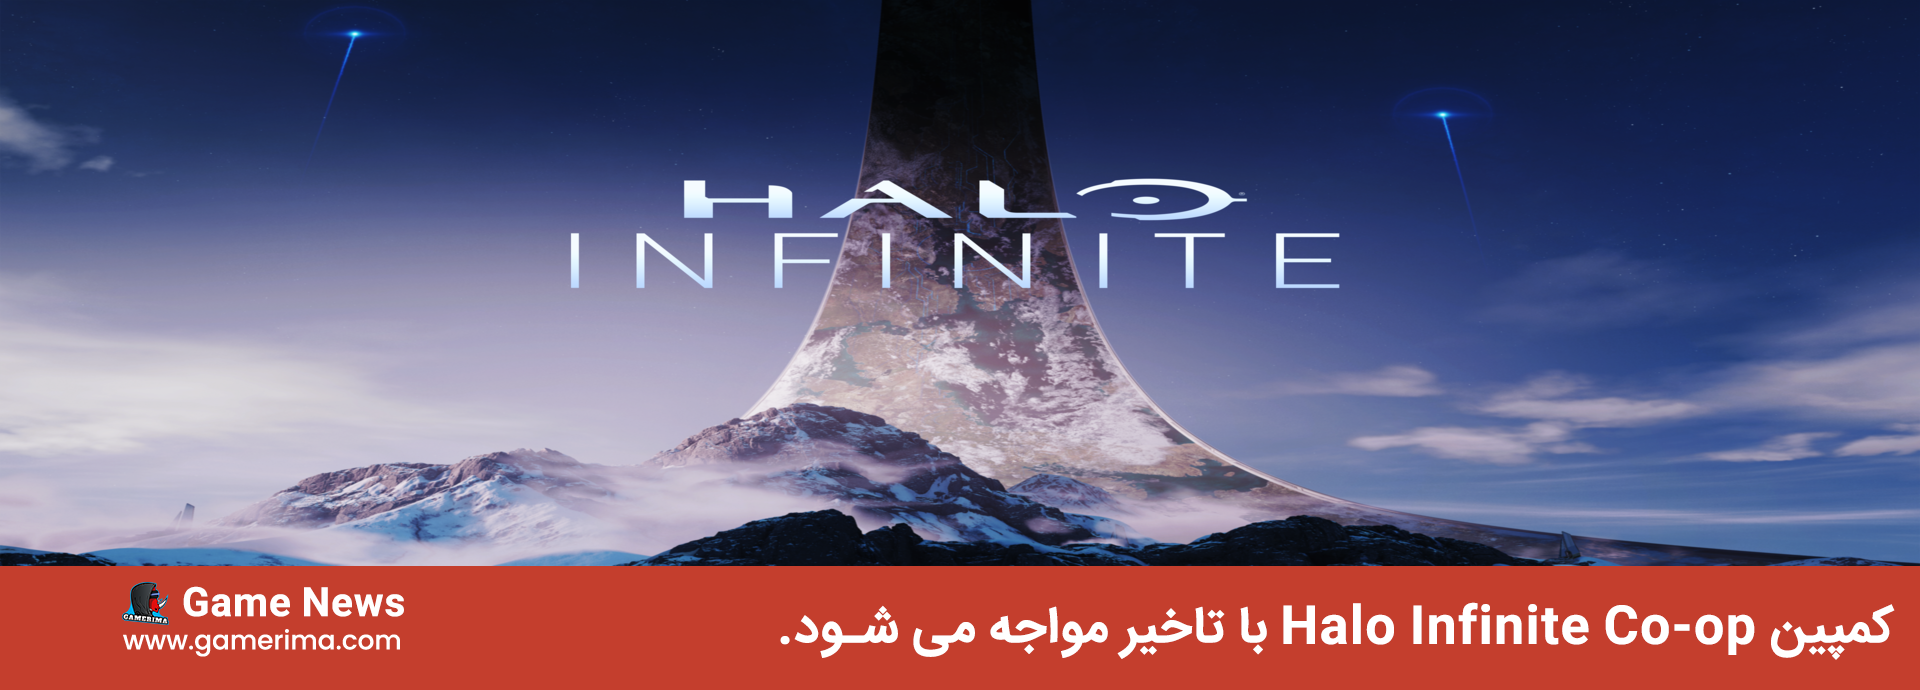 کمپین Halo Infinite Co-op با تاخیر مواجه می شود.(۲۰۲۲)